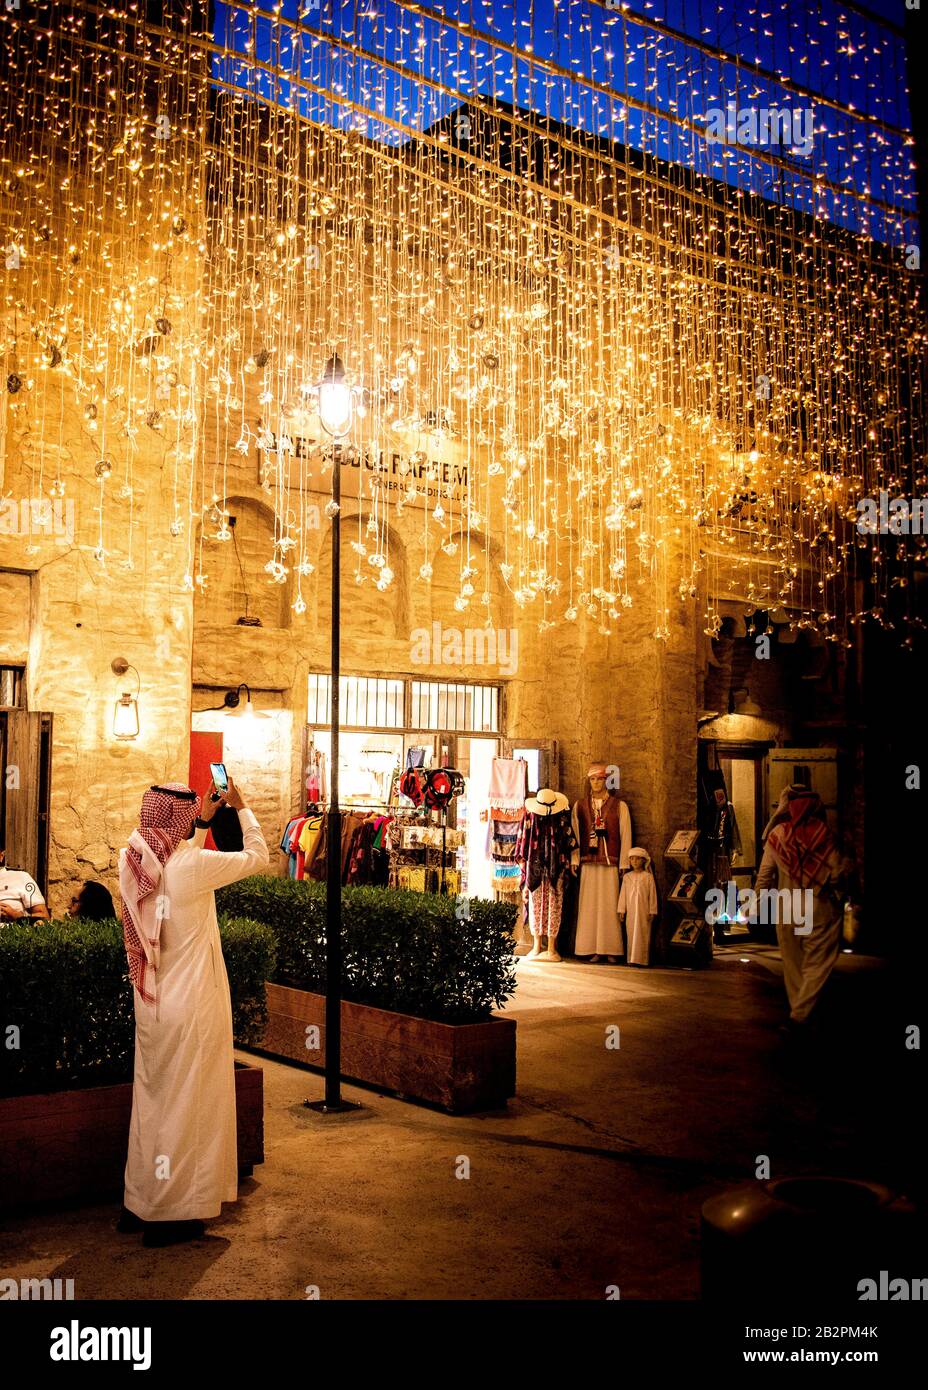 Imagen en color de un hombre de pie a lo largo de toda la longitud, vestido con ropa árabe tradicional, haciendo una foto de una pantalla de iluminación en la ciudad de night.old, Dubai. Foto de stock